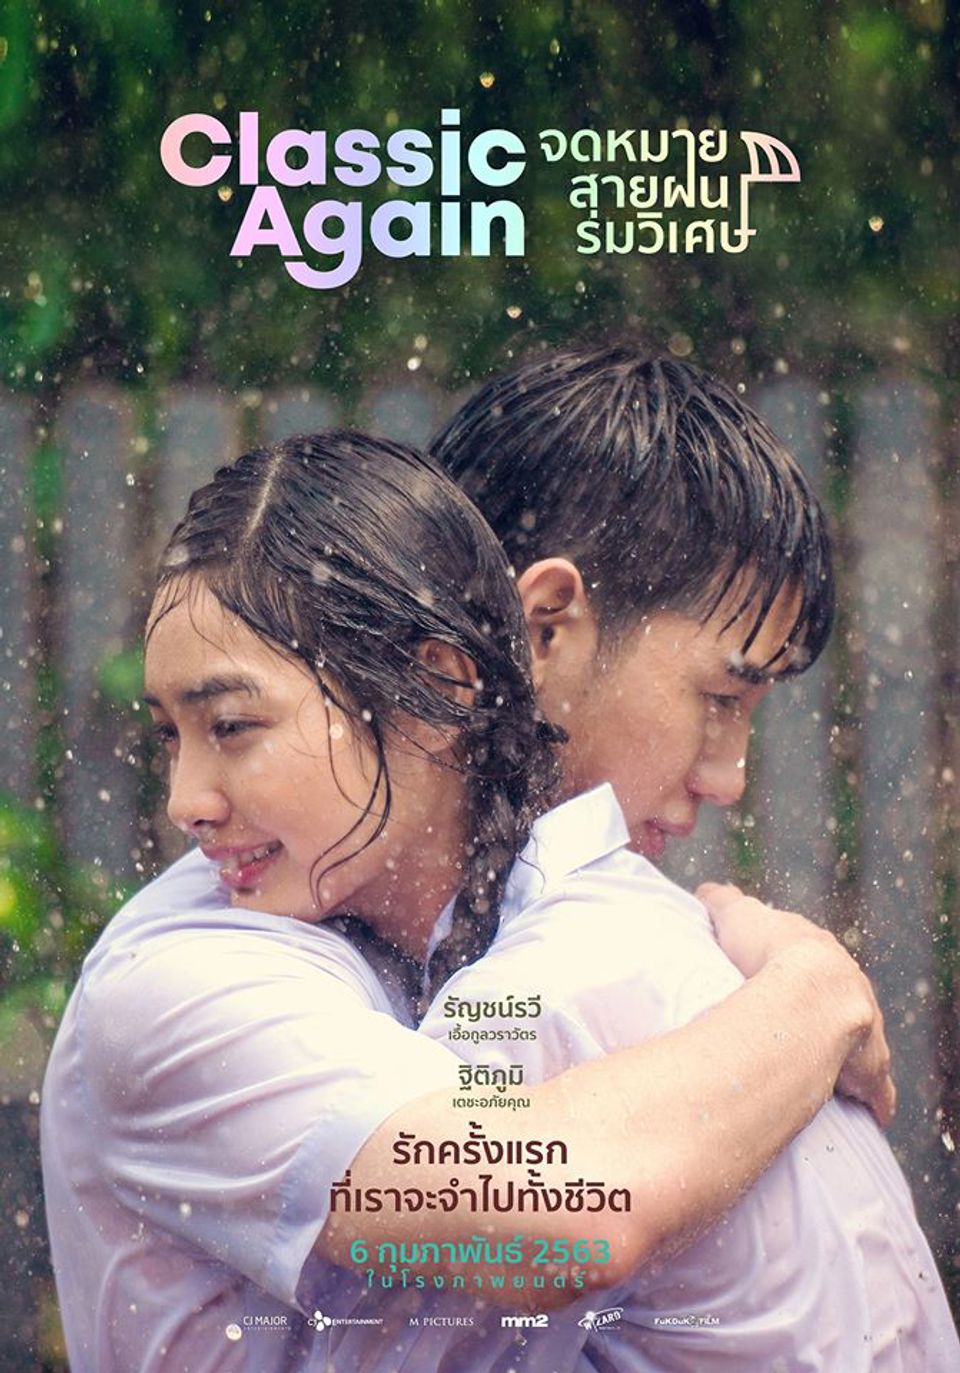 ภาพยนตร์ไทย “CLASSIC AGAIN จดหมาย สายฝน ร่มวิเศษ” (CLASSIC AGAIN)